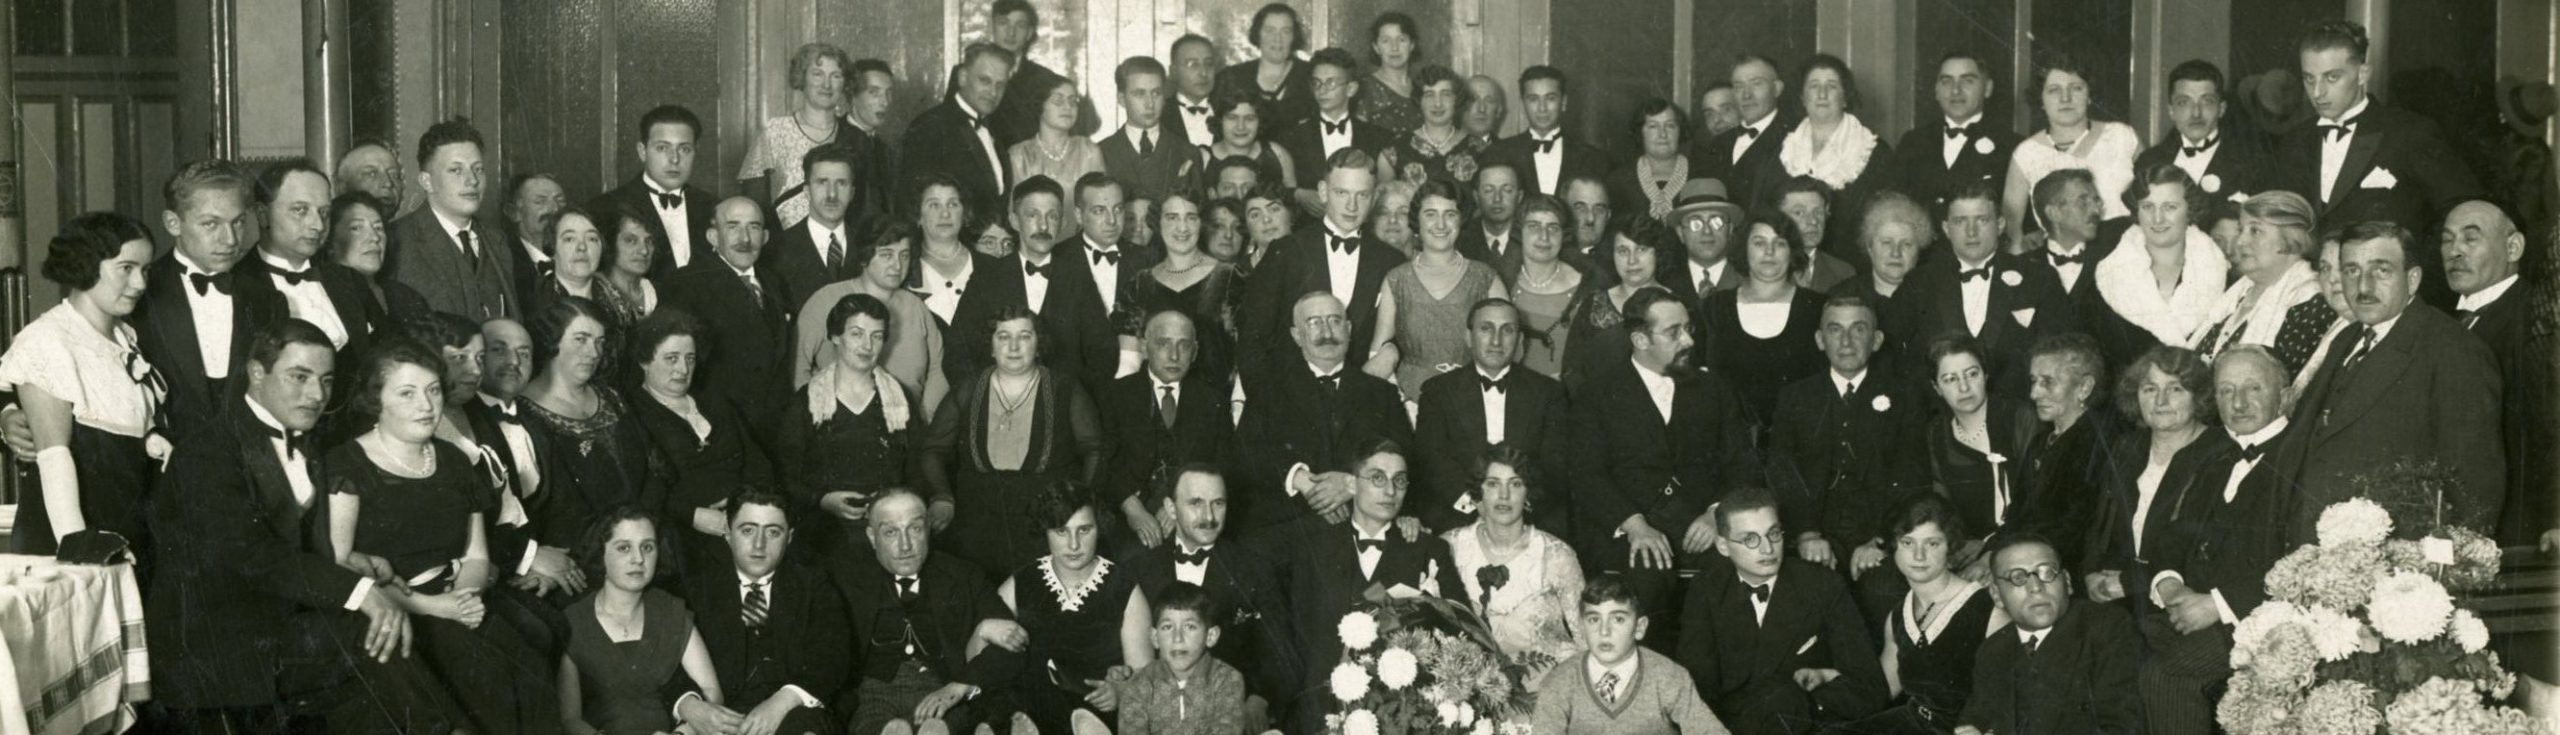 Hofzaallezing 2015-II: De Geschiedenis van Joodse families in Bergen op Zoom